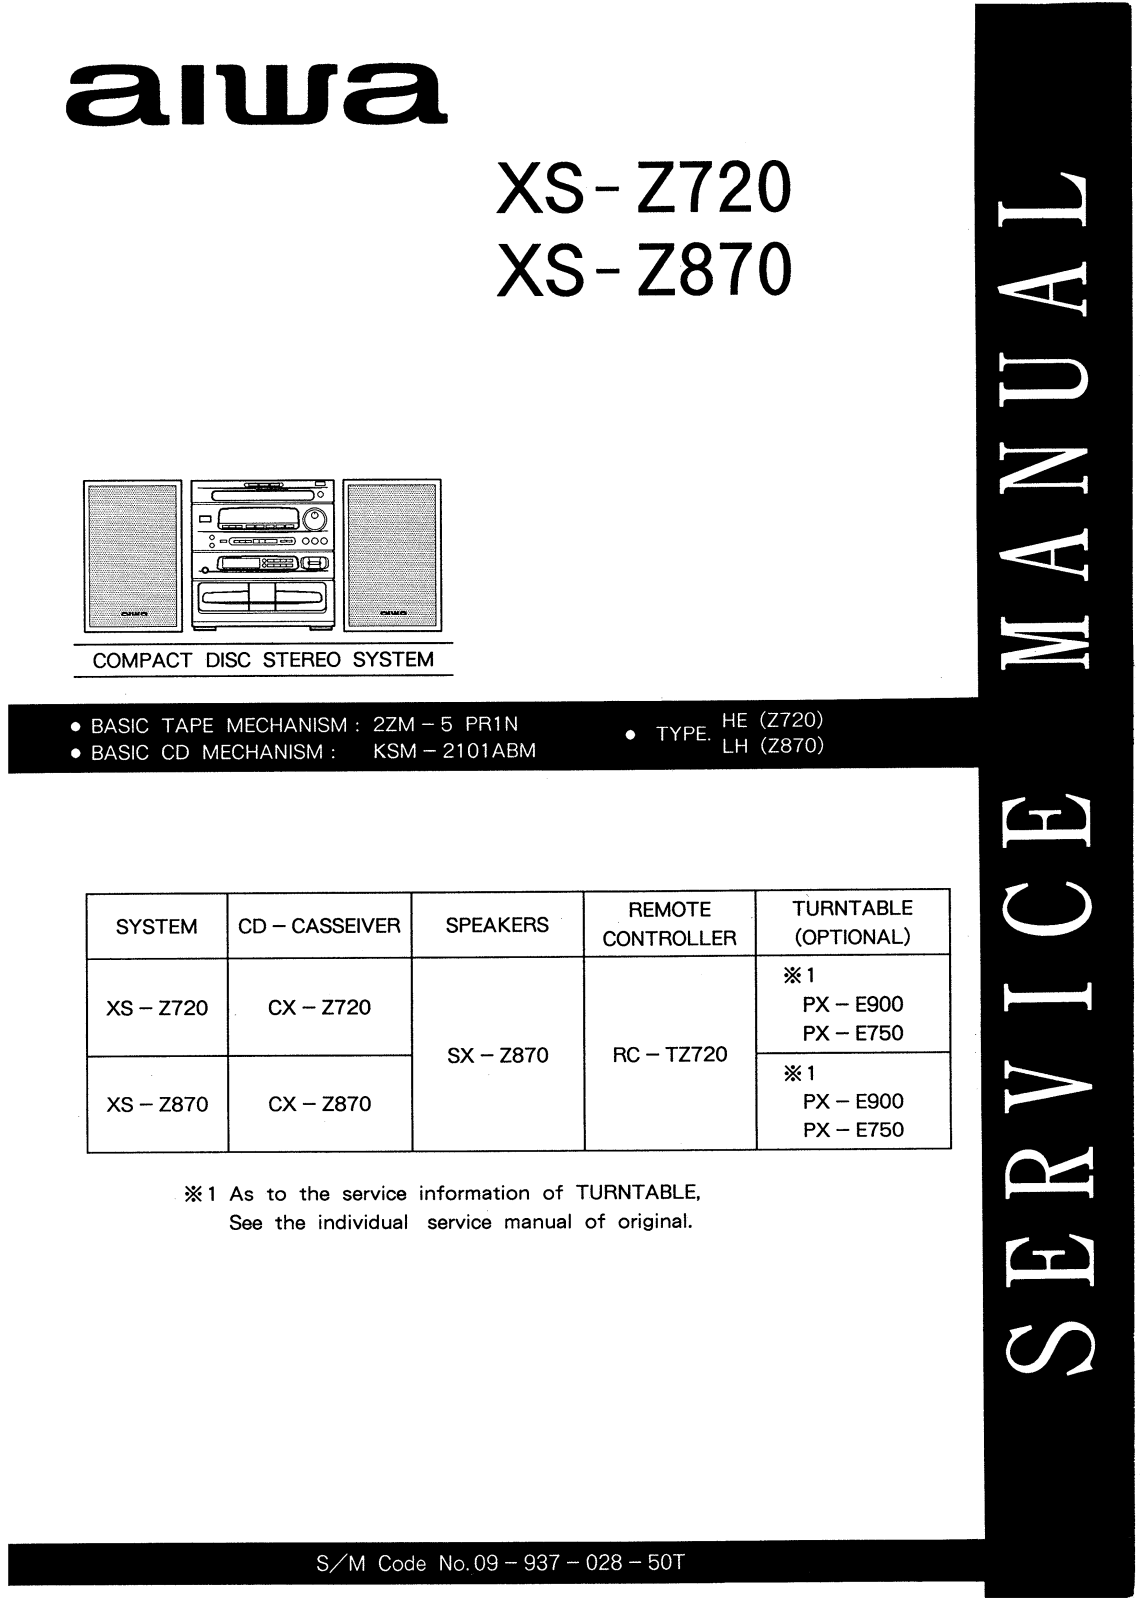 AIWA CX Z870LH Service Manual